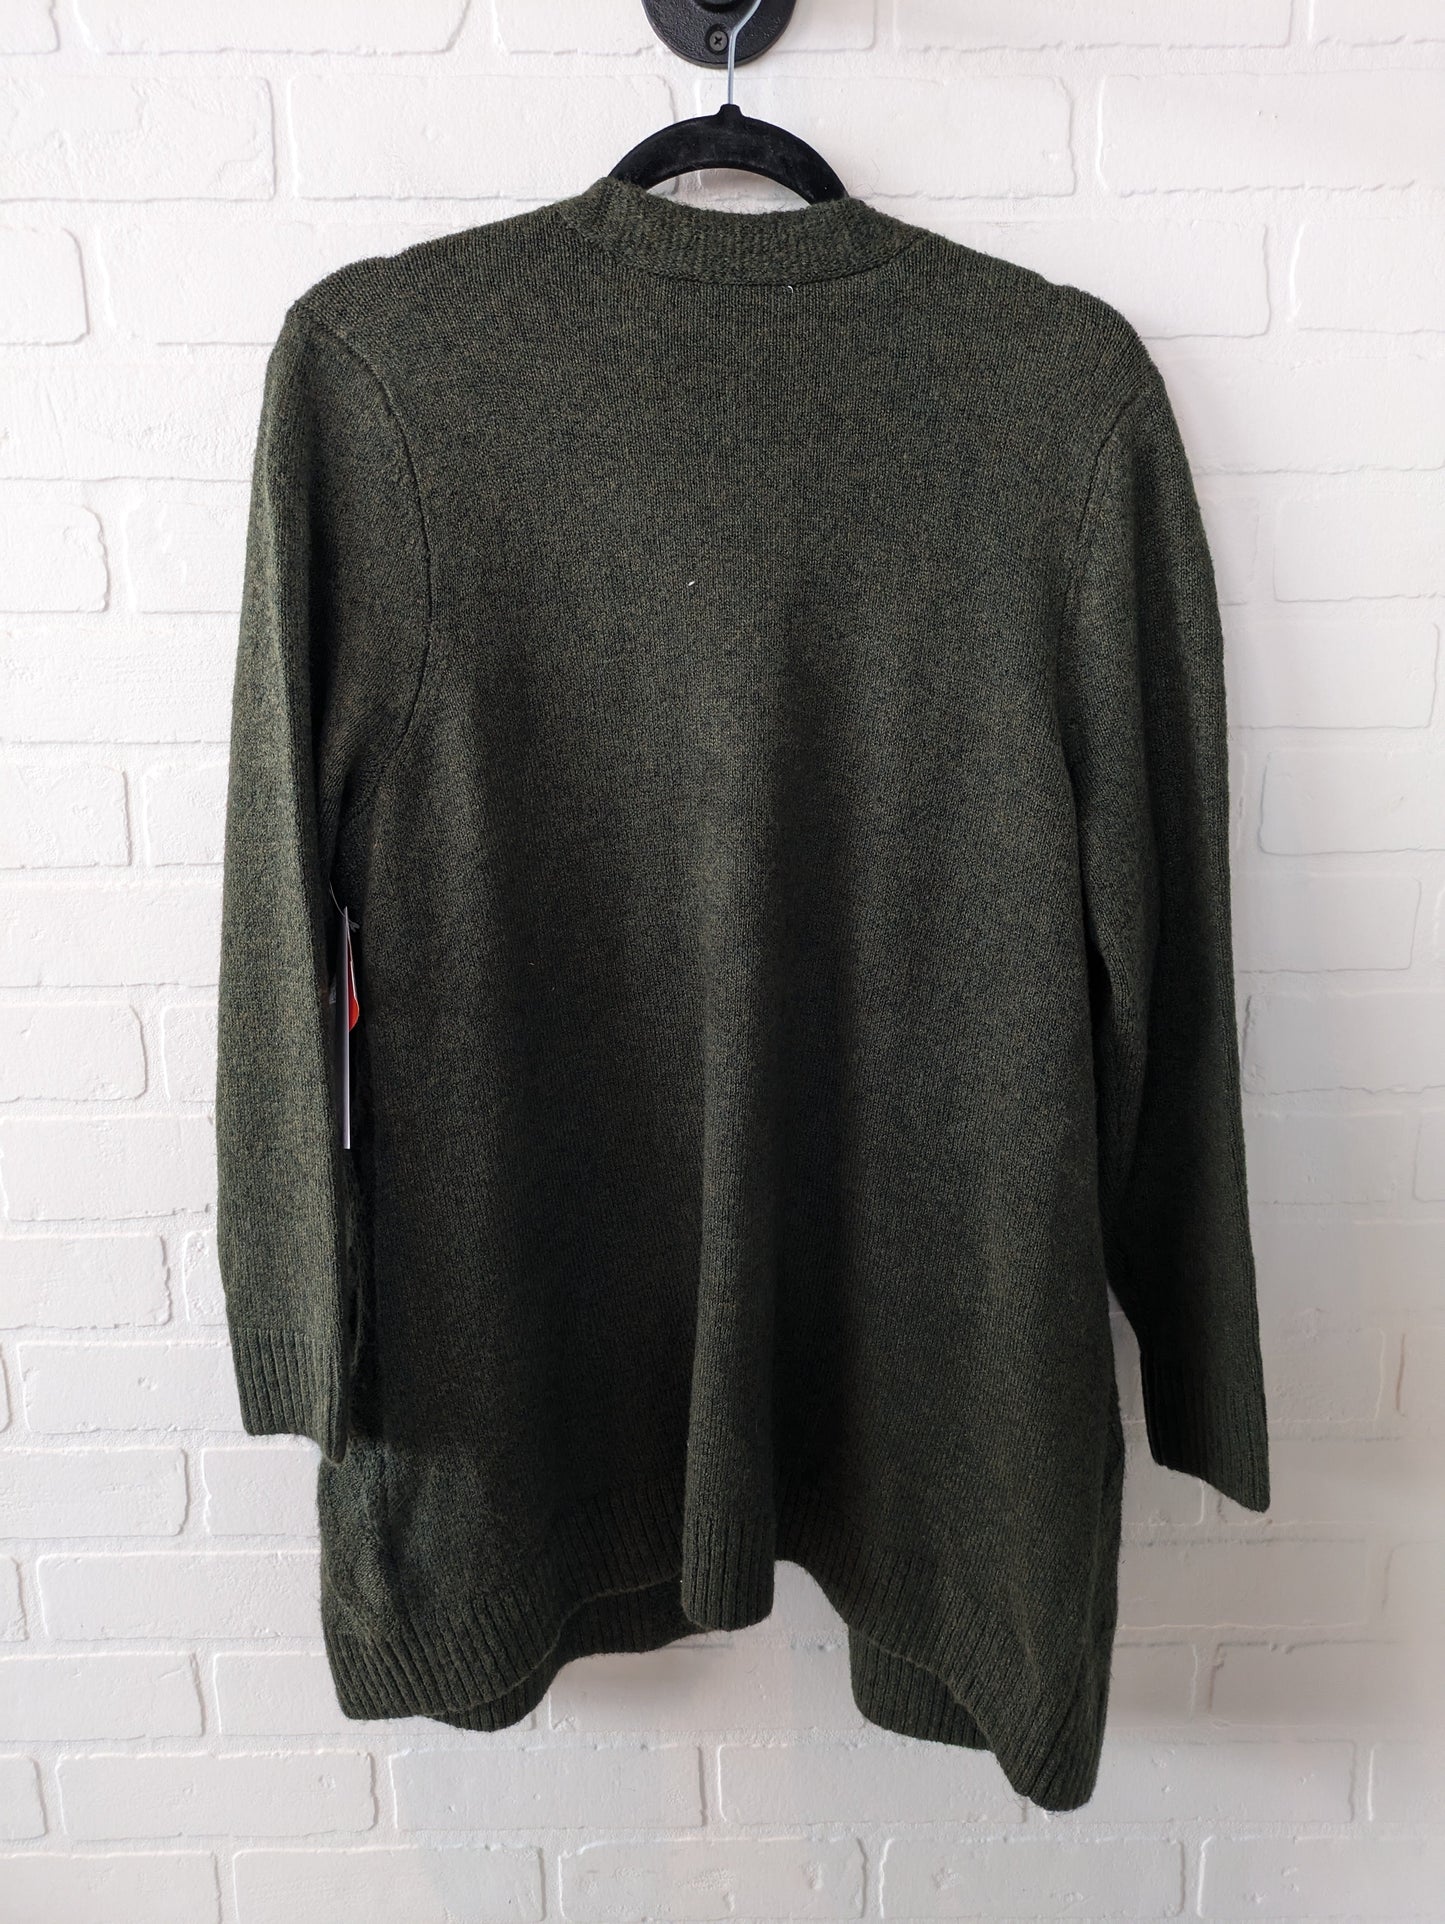 Sweater Cardigan By Cj Banks  Size: 1x